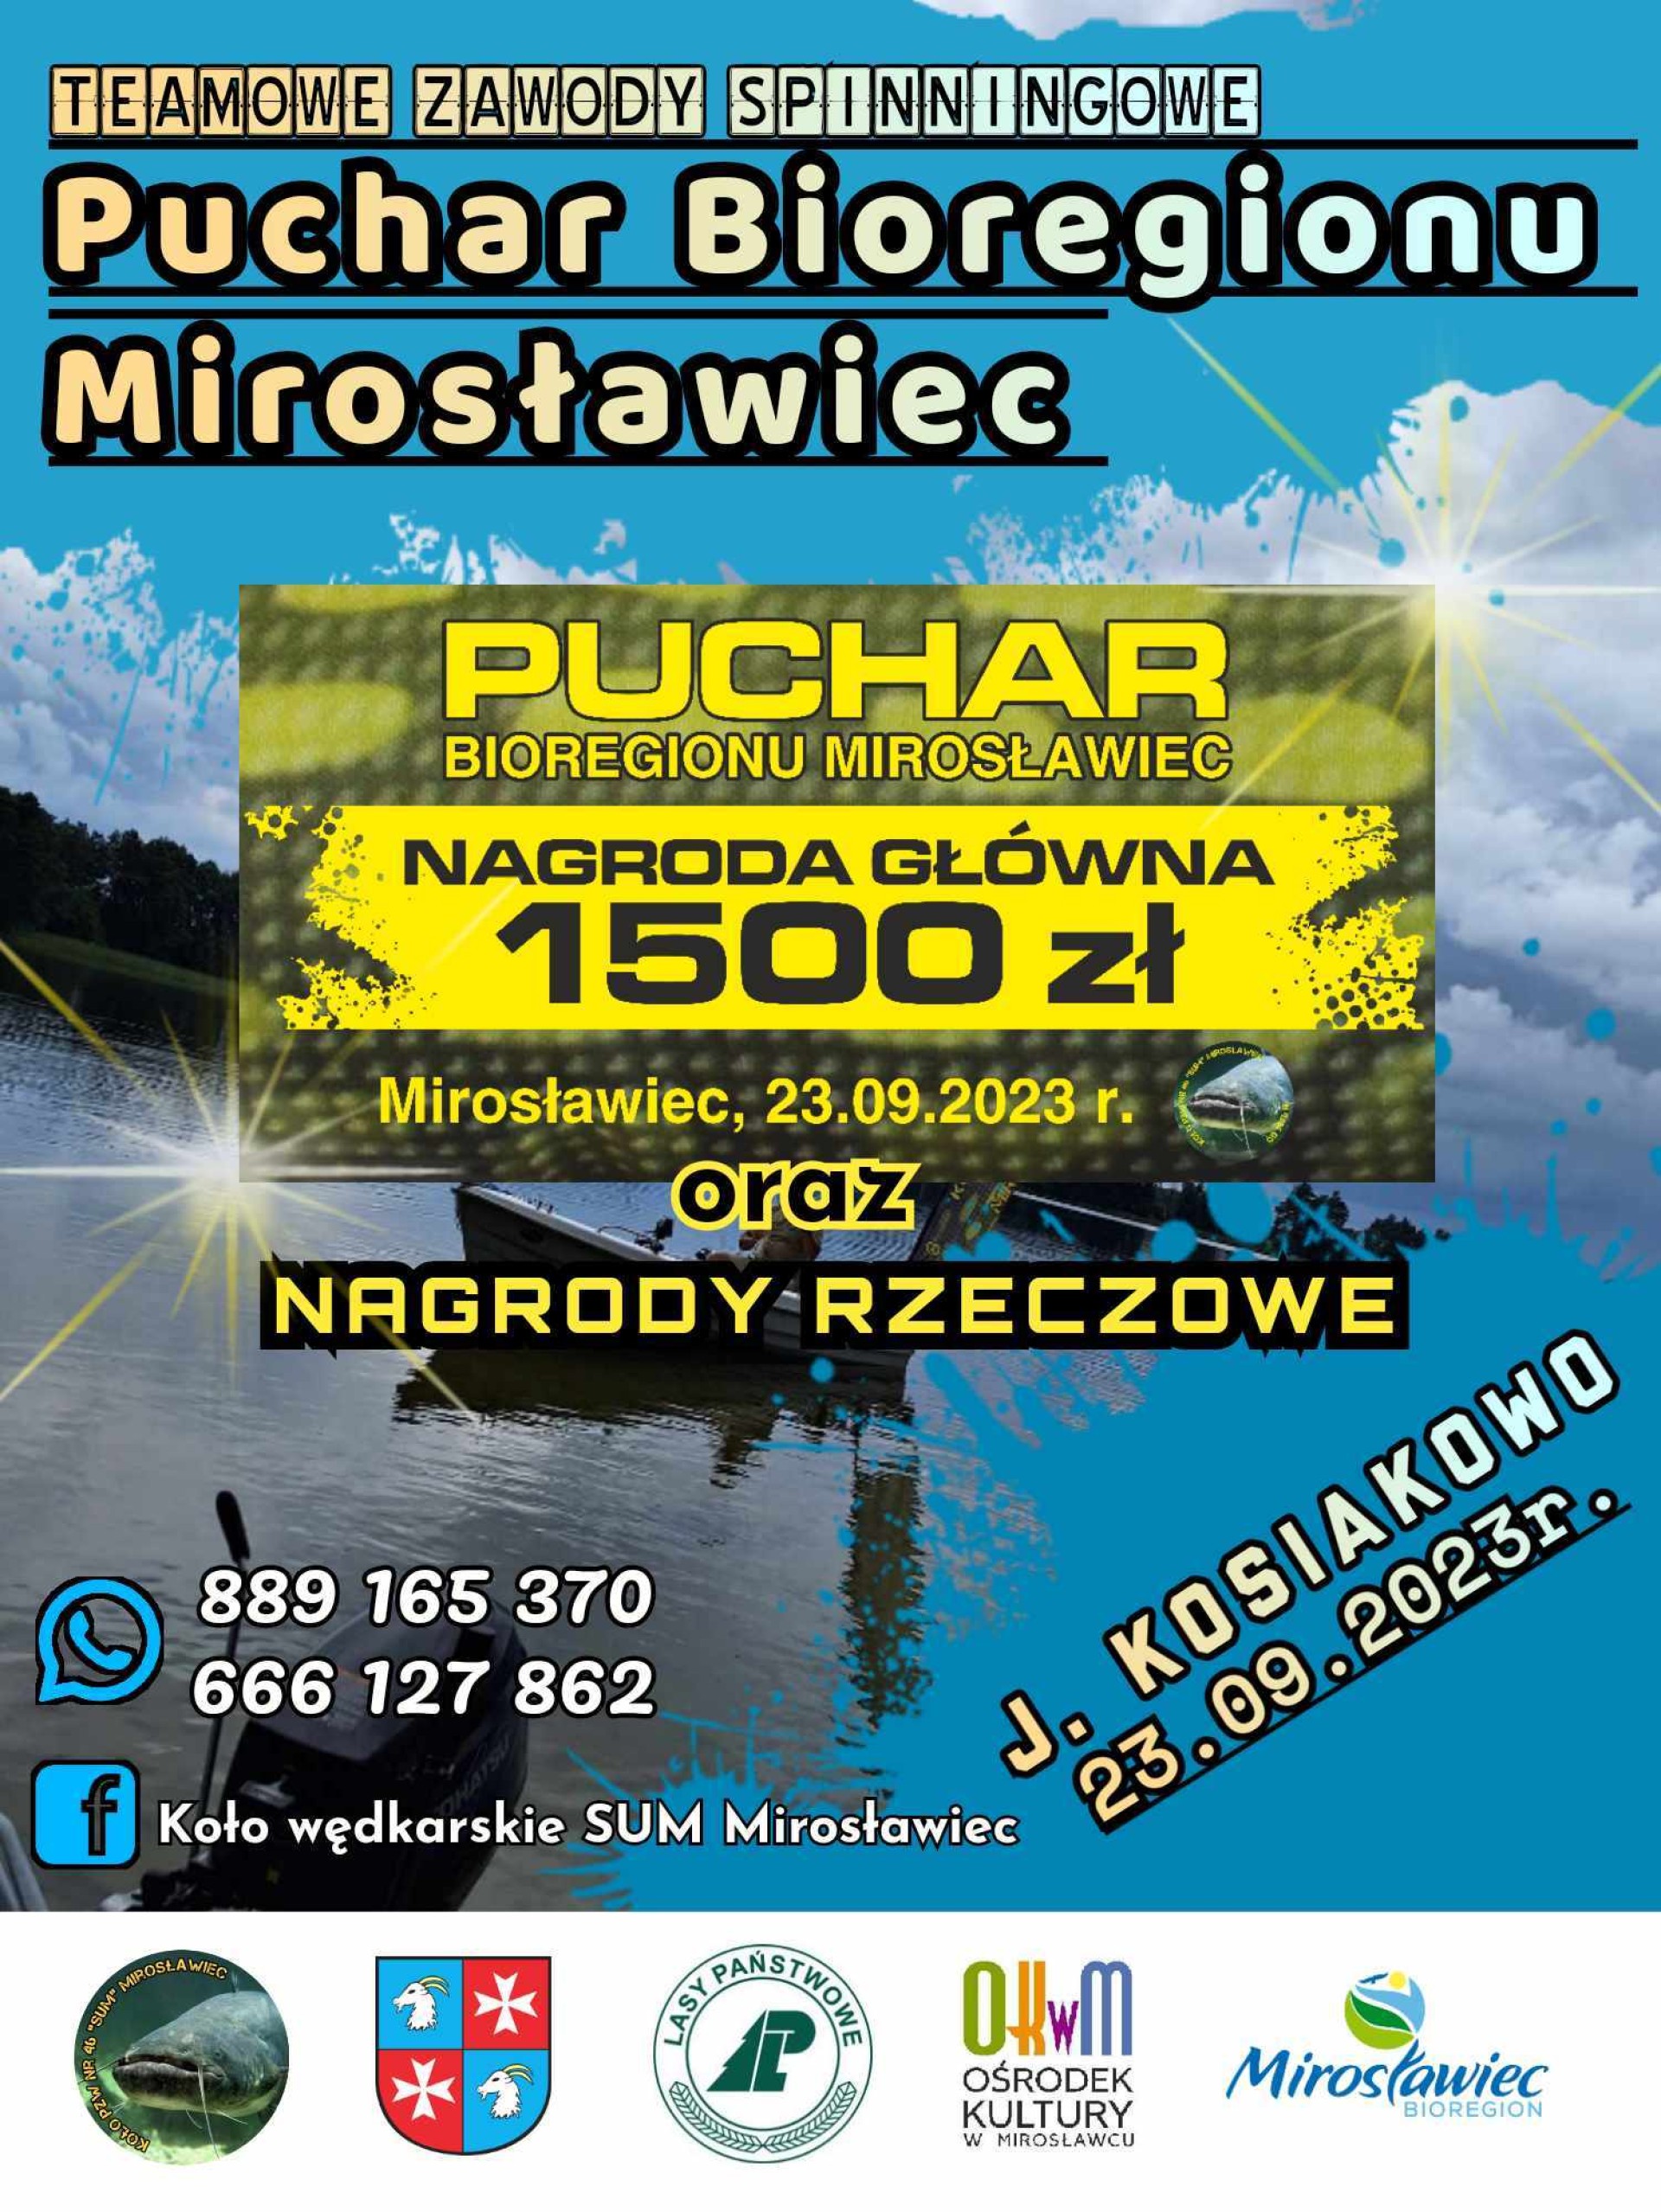 2023-09-23 Teamowe zawody spinningowe – Puchar Bioregionu Mirosławiec